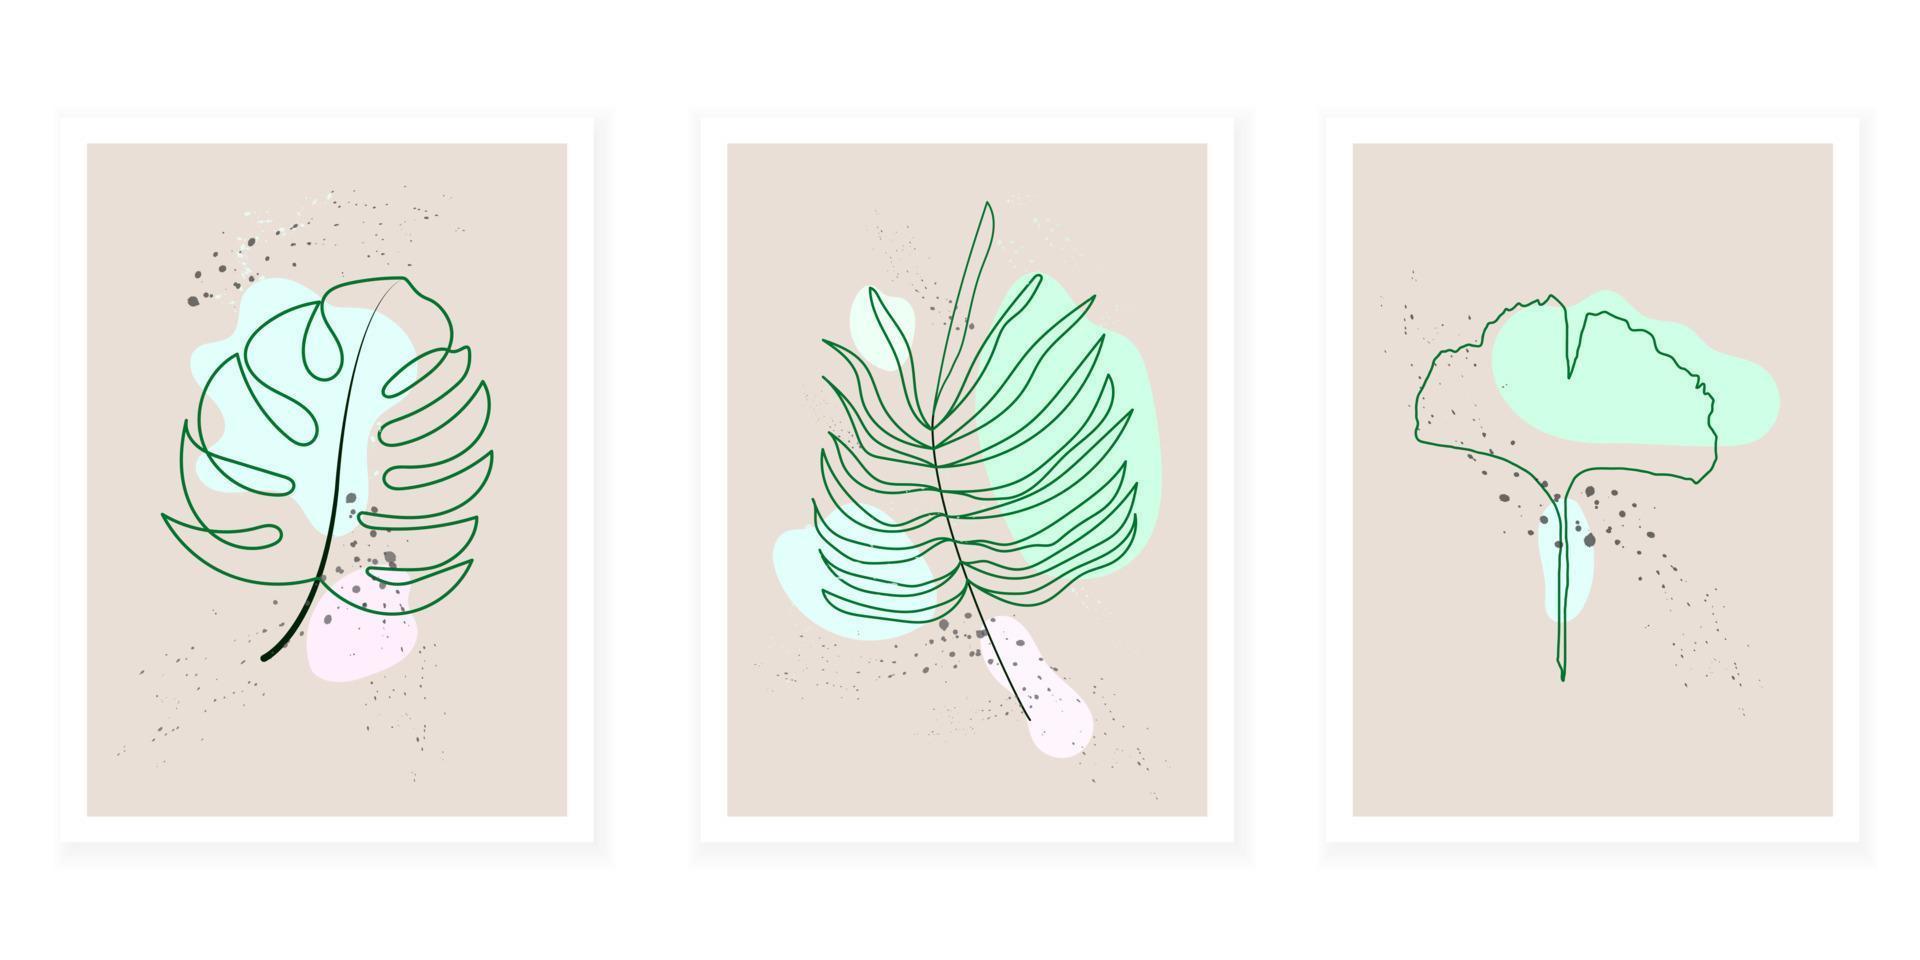 tropische grüne botanische Blattkunstillustration ist Vektor mit abstrakten Formen, die als Wandbild oder Tapete verwendet werden können.